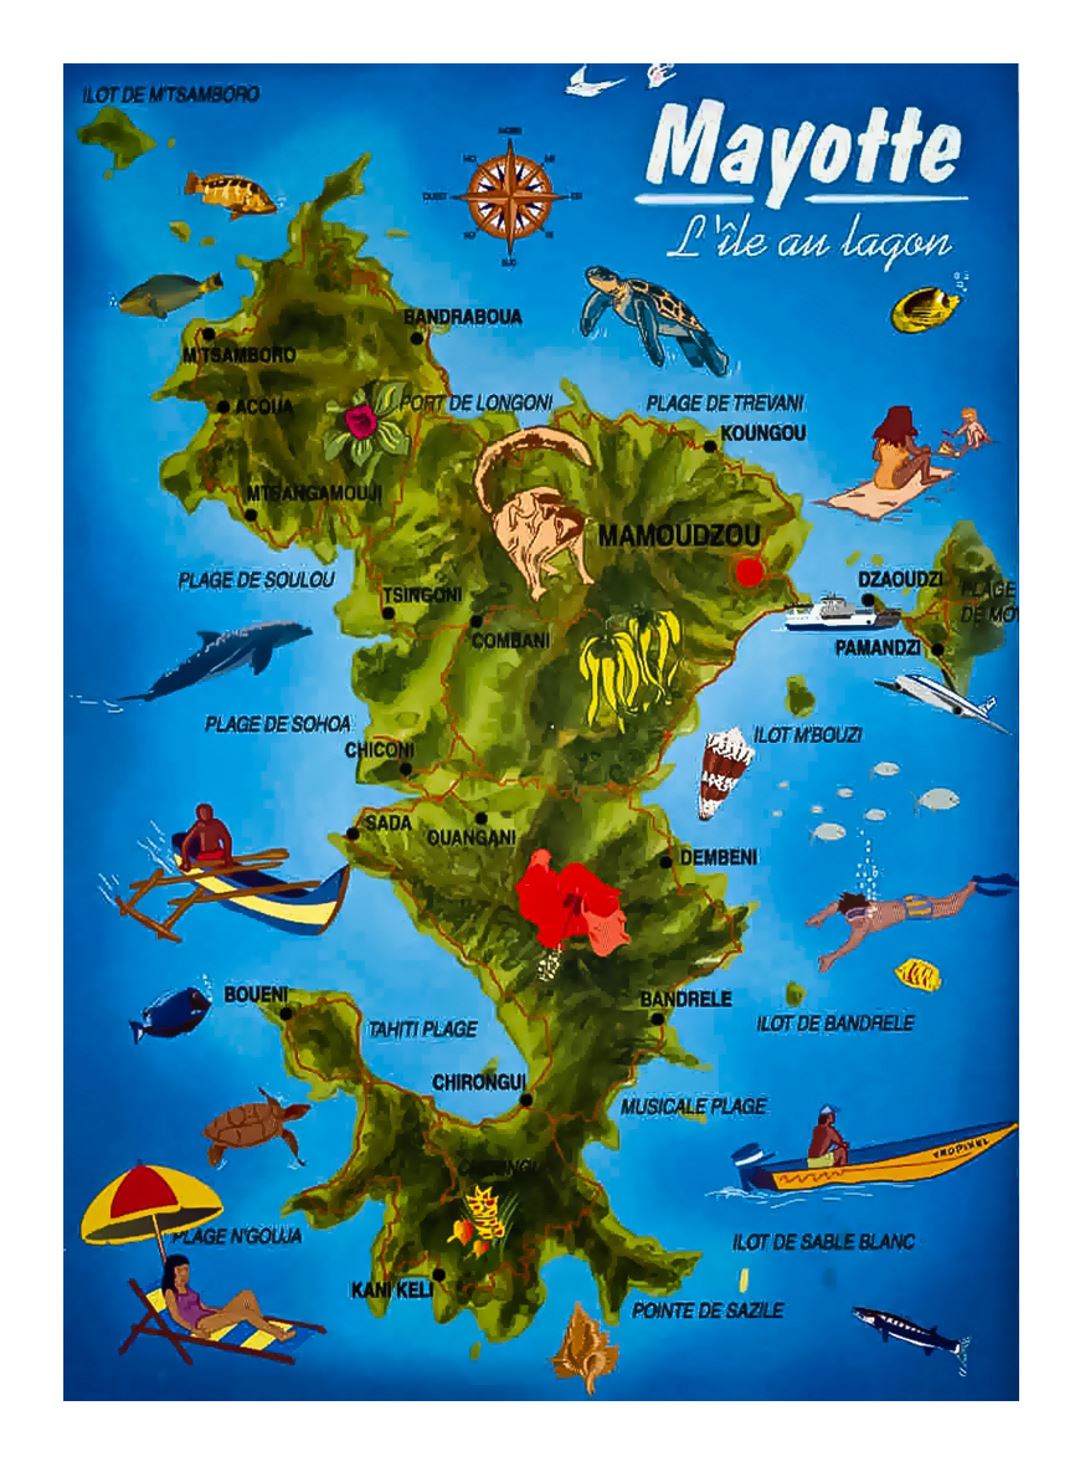 Детальная туристическая карта острова Майотта